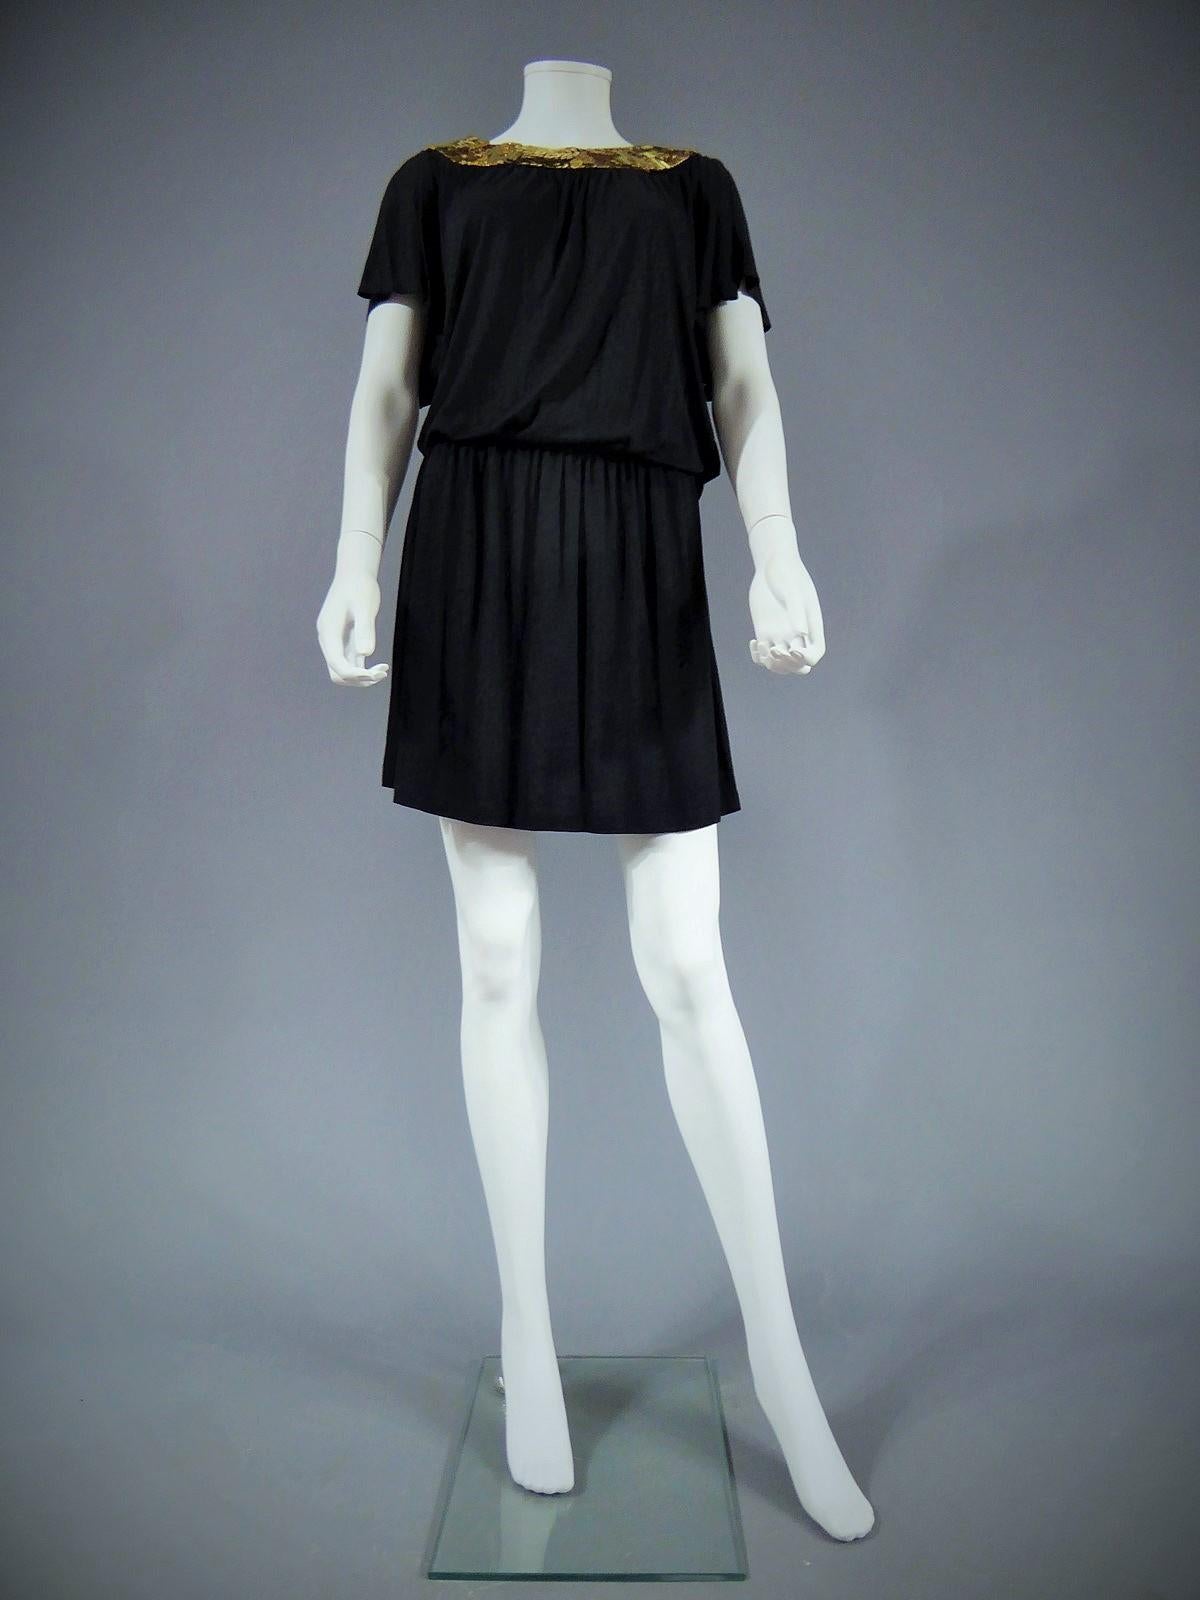 Circa 1970-1980

Angleterre.

Mini robe noire de Biba et collier à paillettes d'or. Ouvert au dos. Manches larges et amples. Robe composée d'un grand t-shirt et d'une mini-jupe, ceinture serrée à la taille. Fermeture à glissière sur la jupe. Maillot